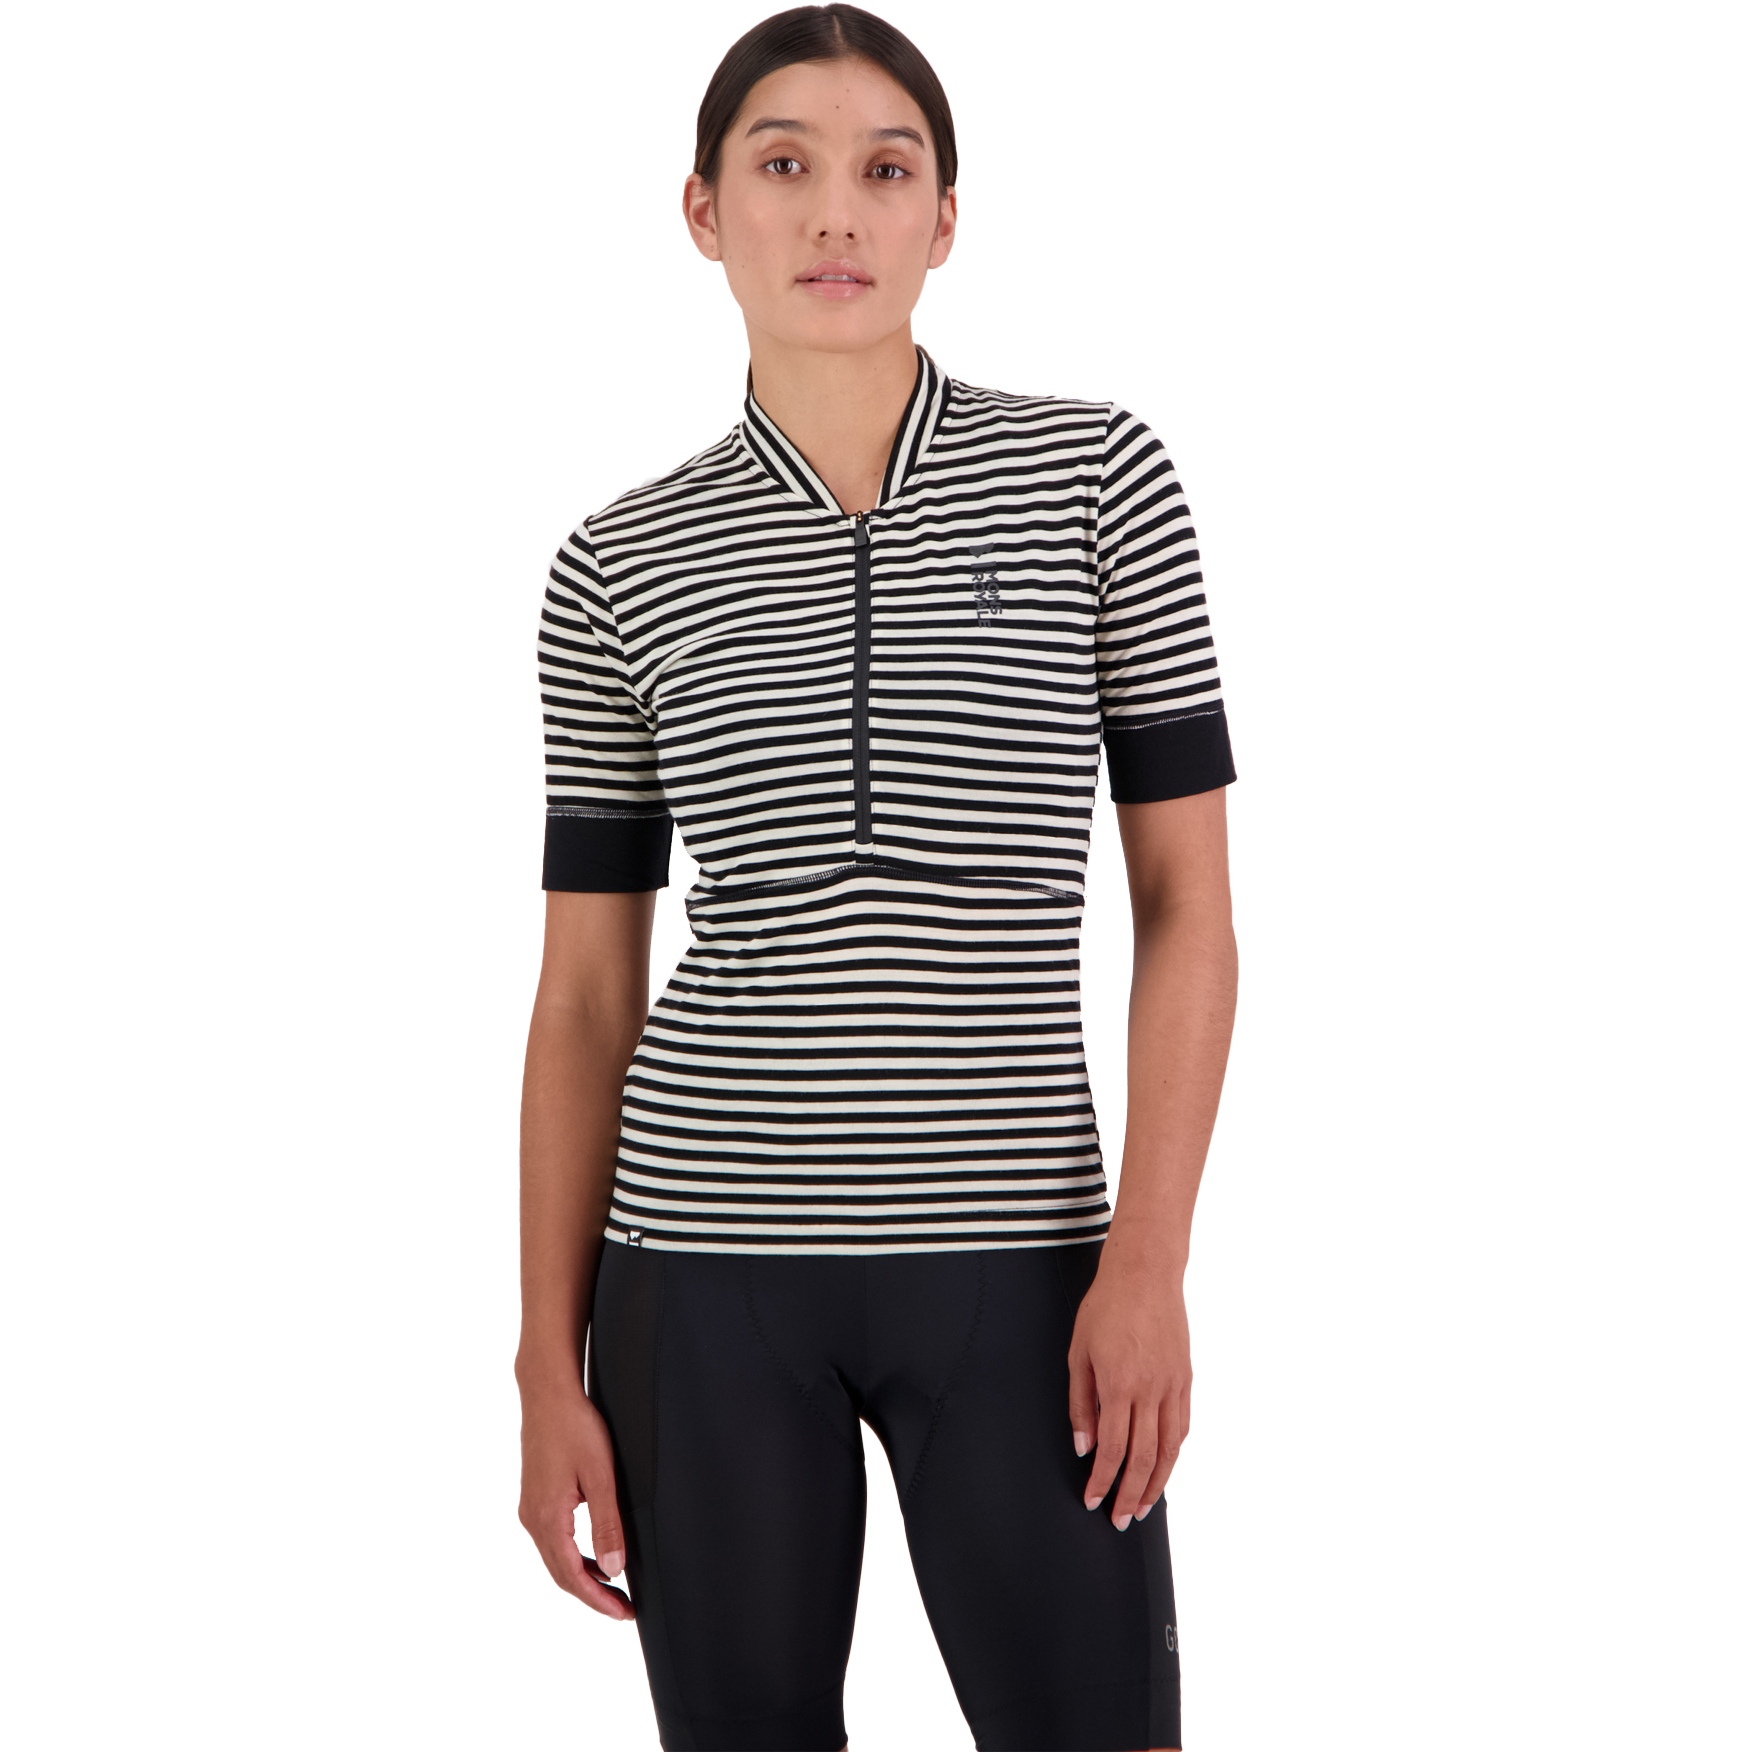 Produktbild von Mons Royale Cadence Merino Air-Con Half Zip T-Shirt Damen - mr stripe